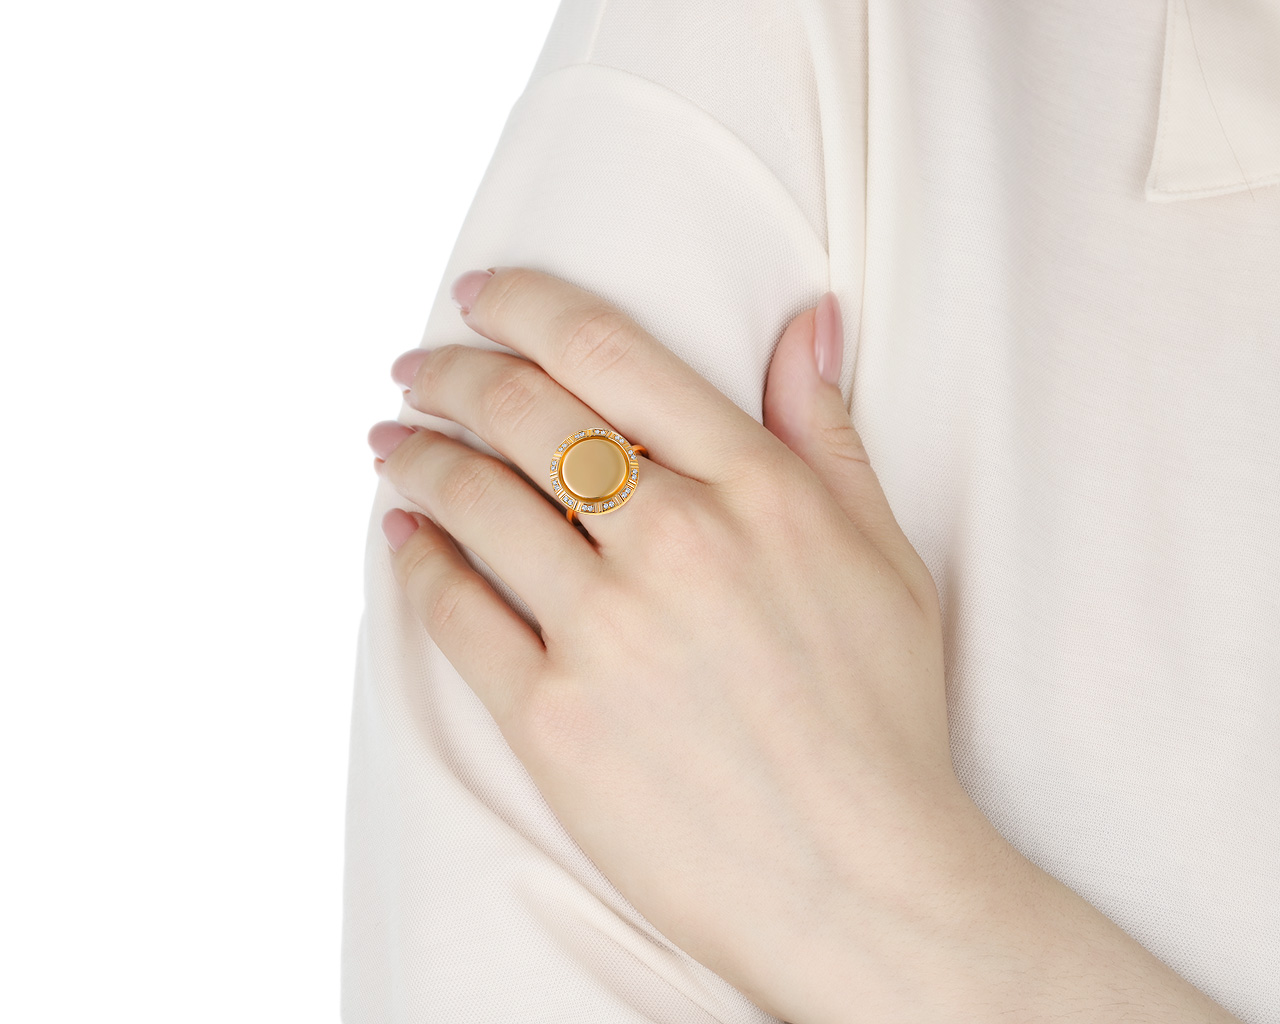 Оригинальное золотое кольцо с бриллиантами 0.10ct Piaget